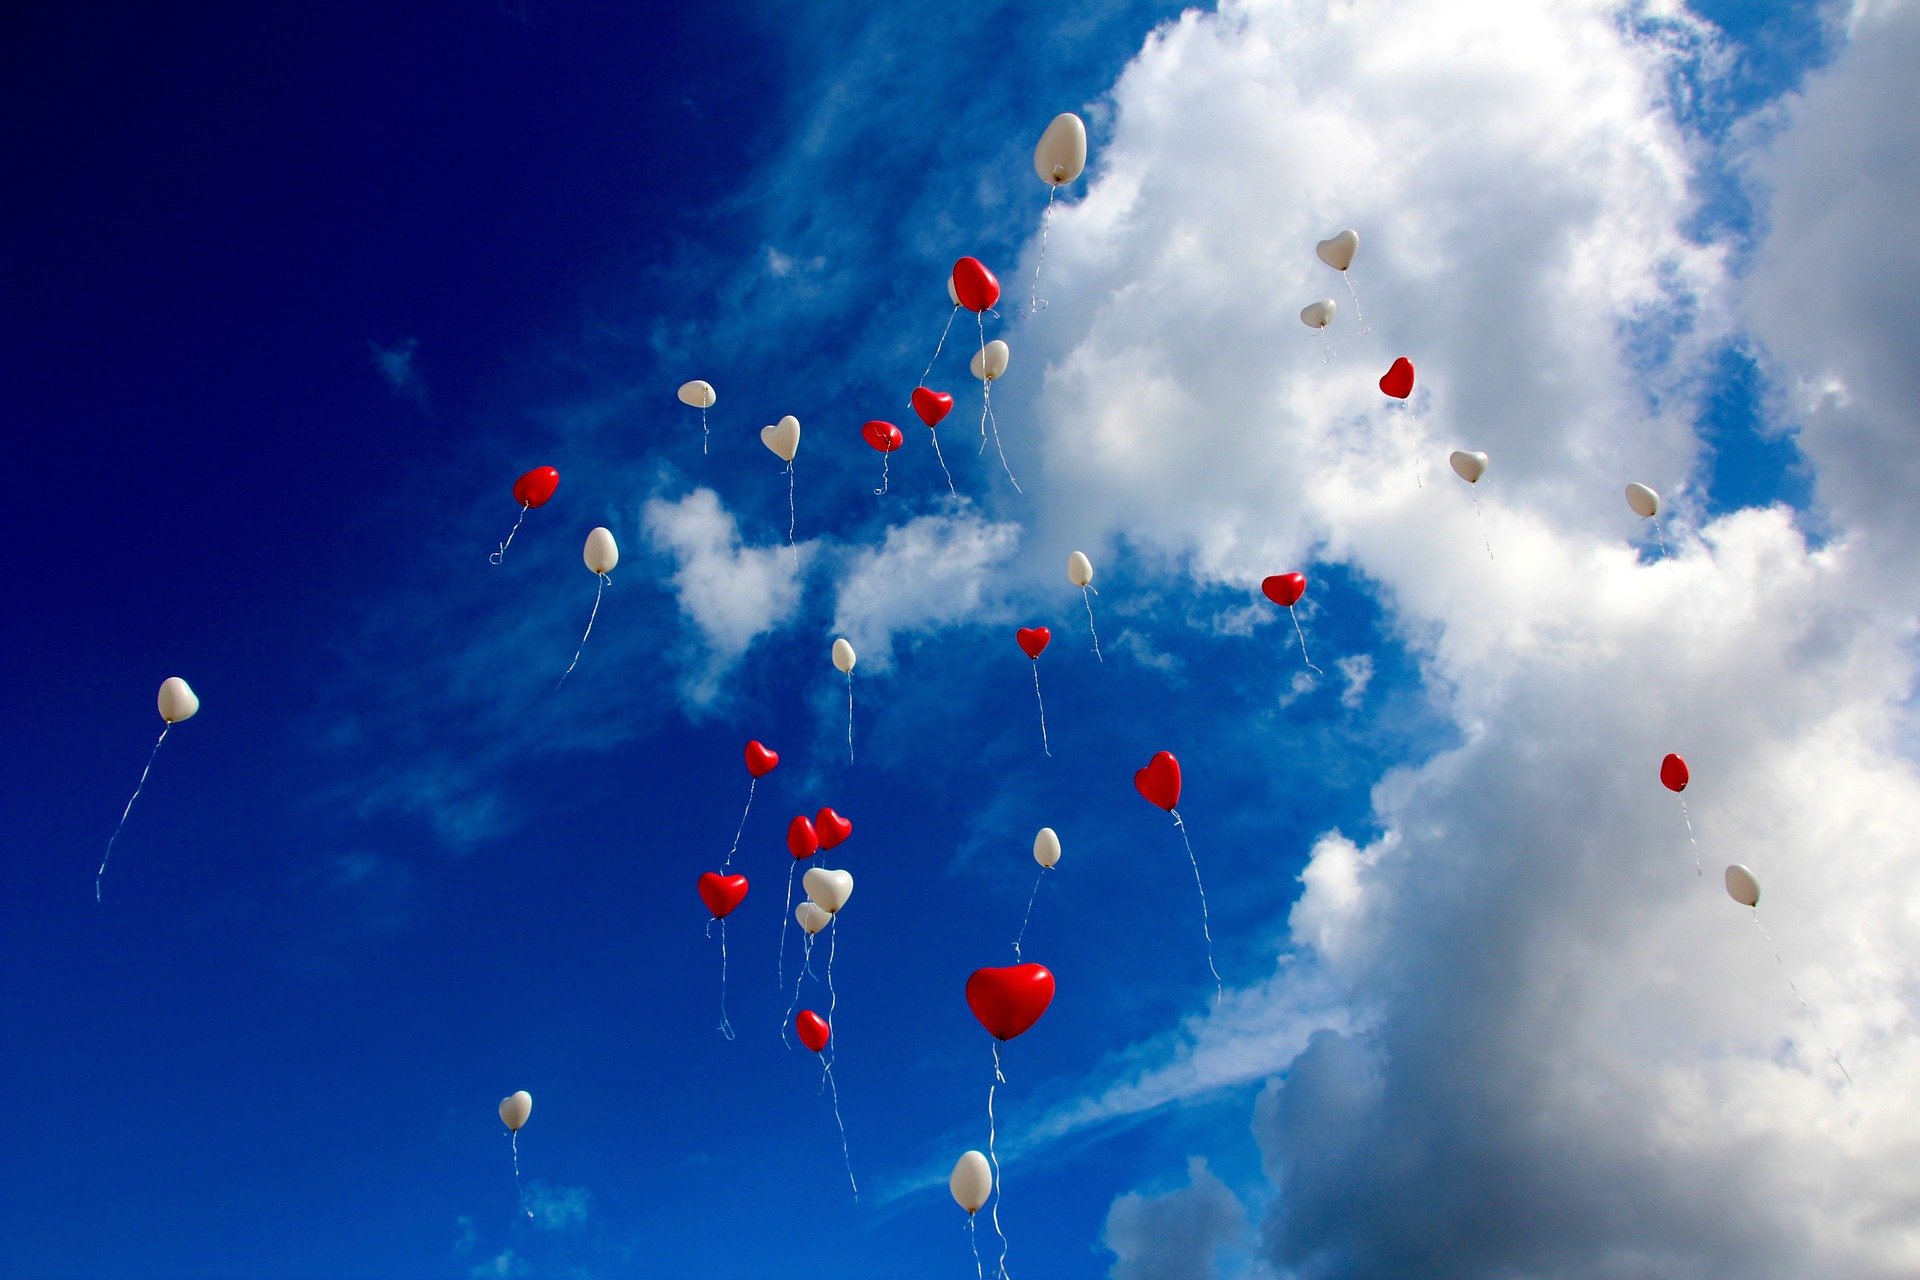 Ballons (c) Bild von Peggy und Marco Lachmann-Anke auf Pixabay